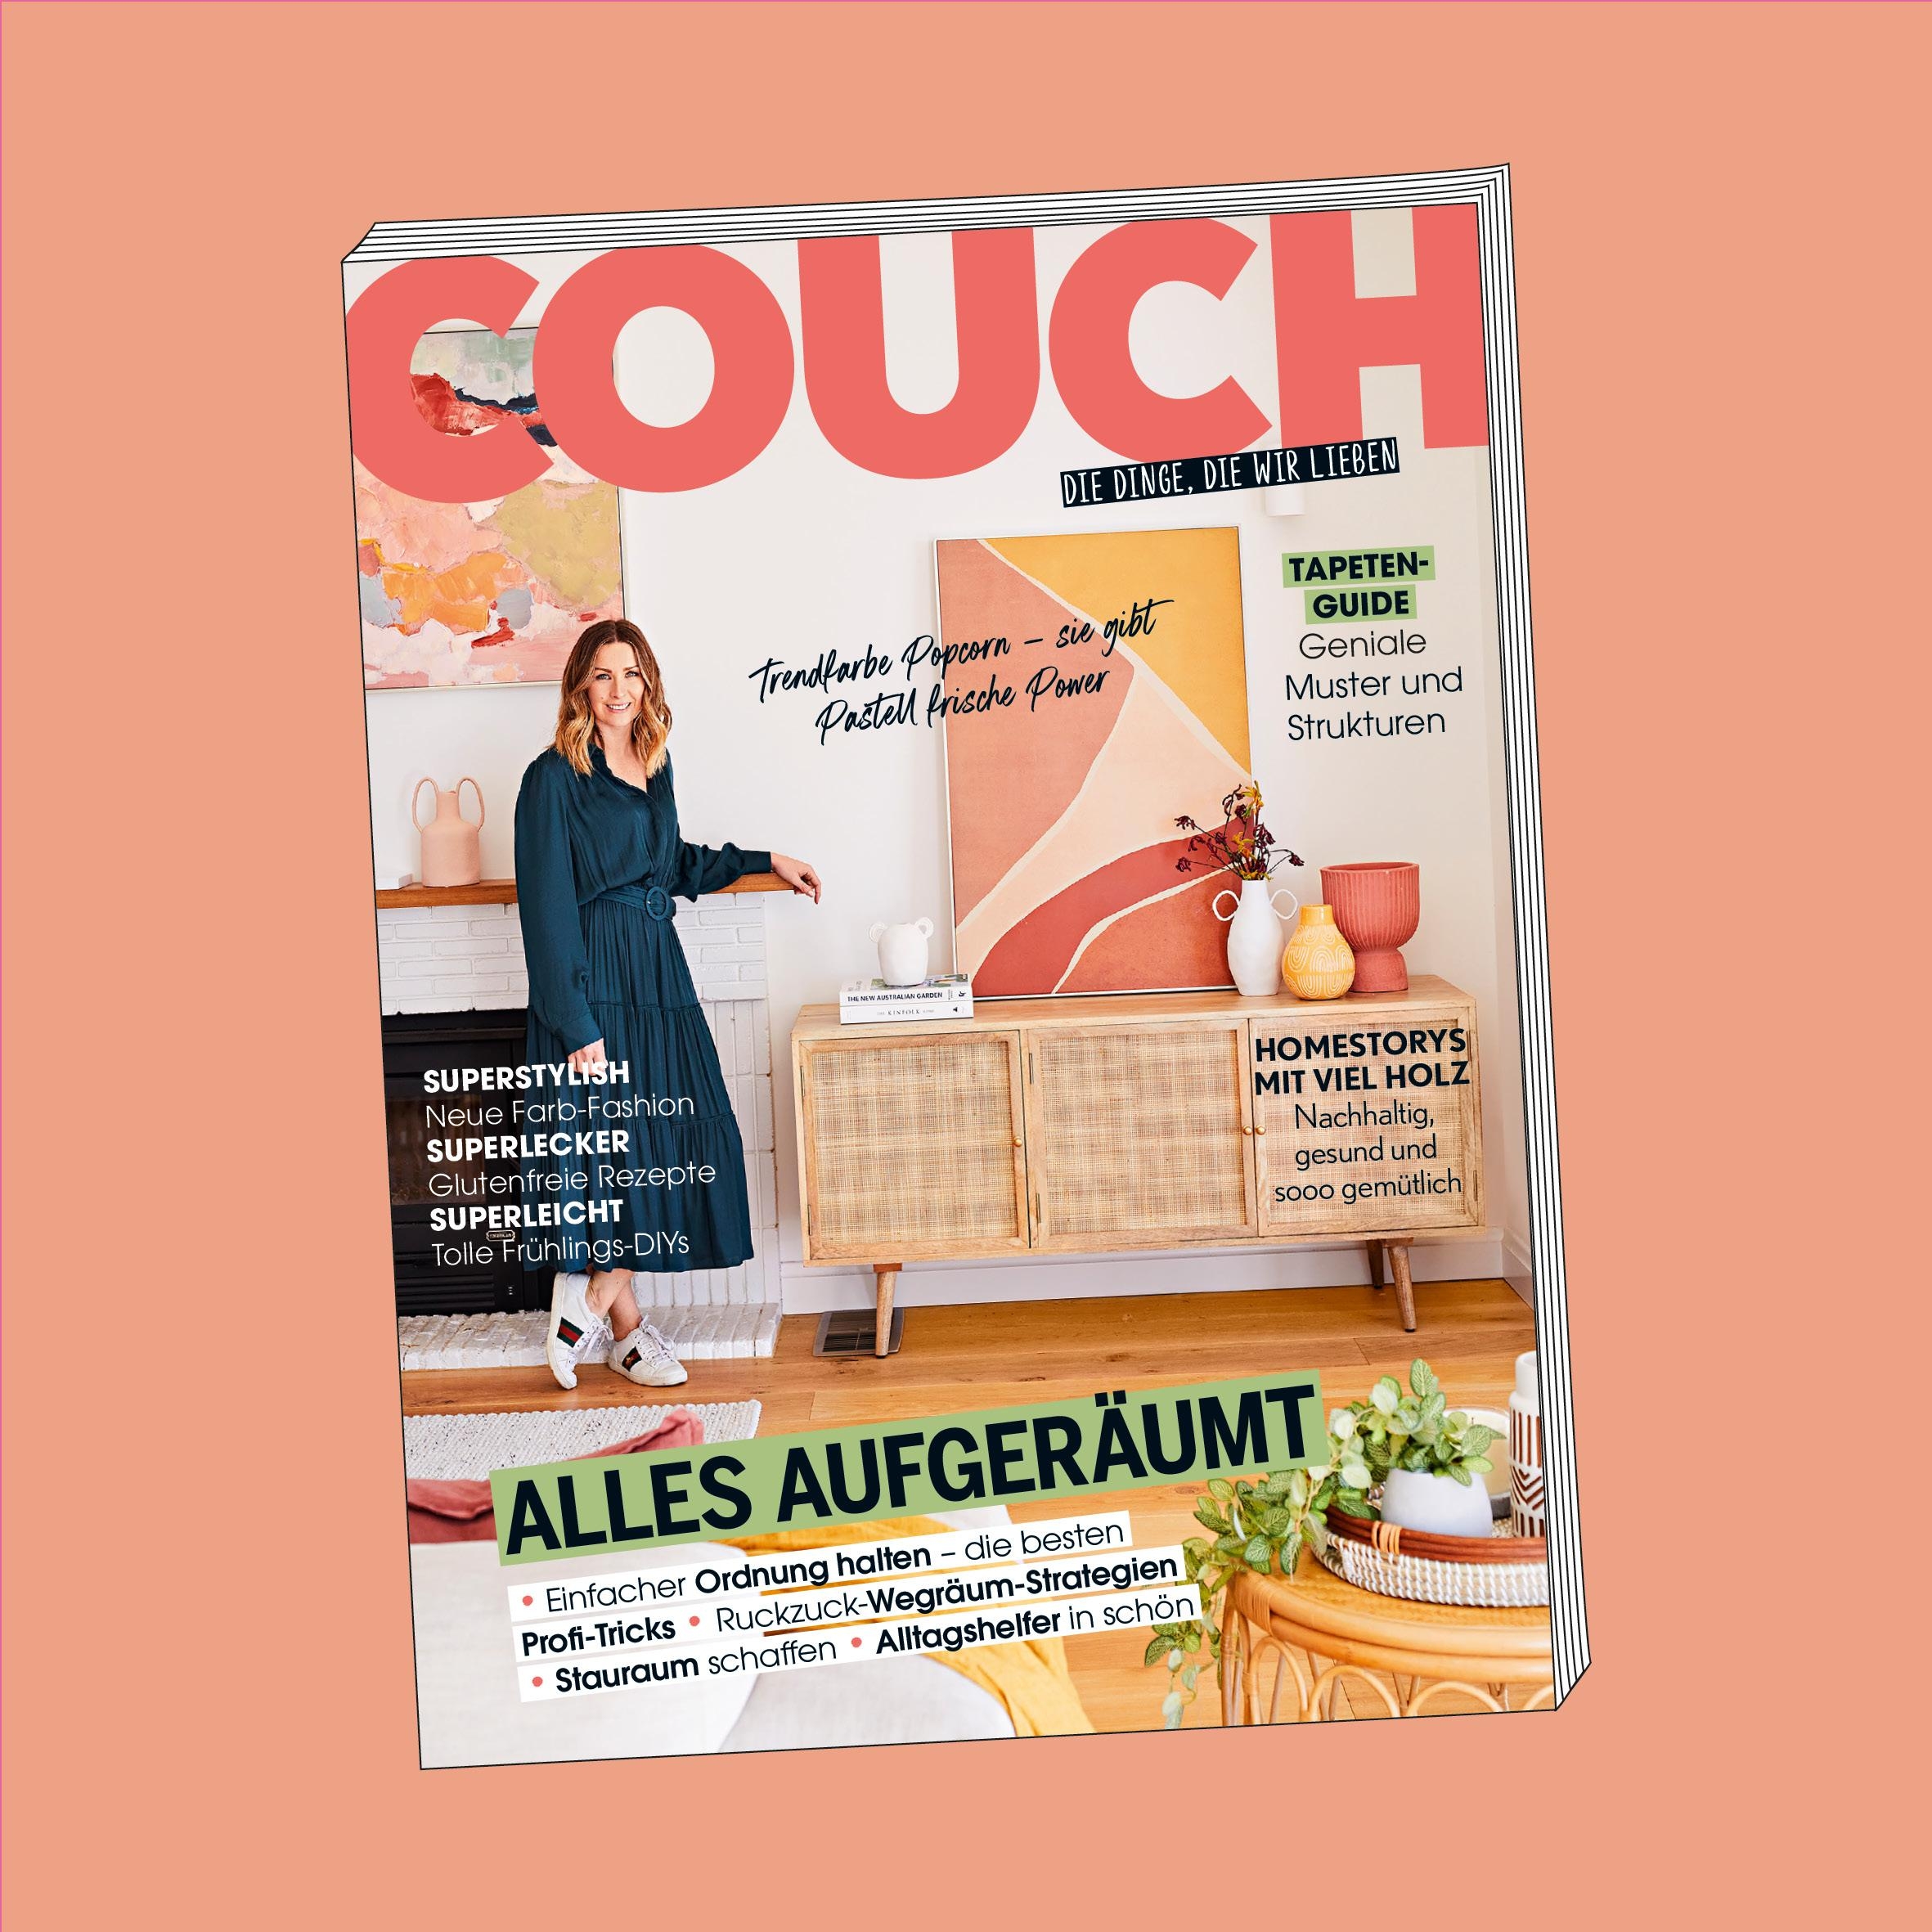 Habt ihr schon gesehen? Die neue COUCH ist da! Schnell zum Kiosk und mit uns Aufräumen ;) #couchmagazin #couchabo